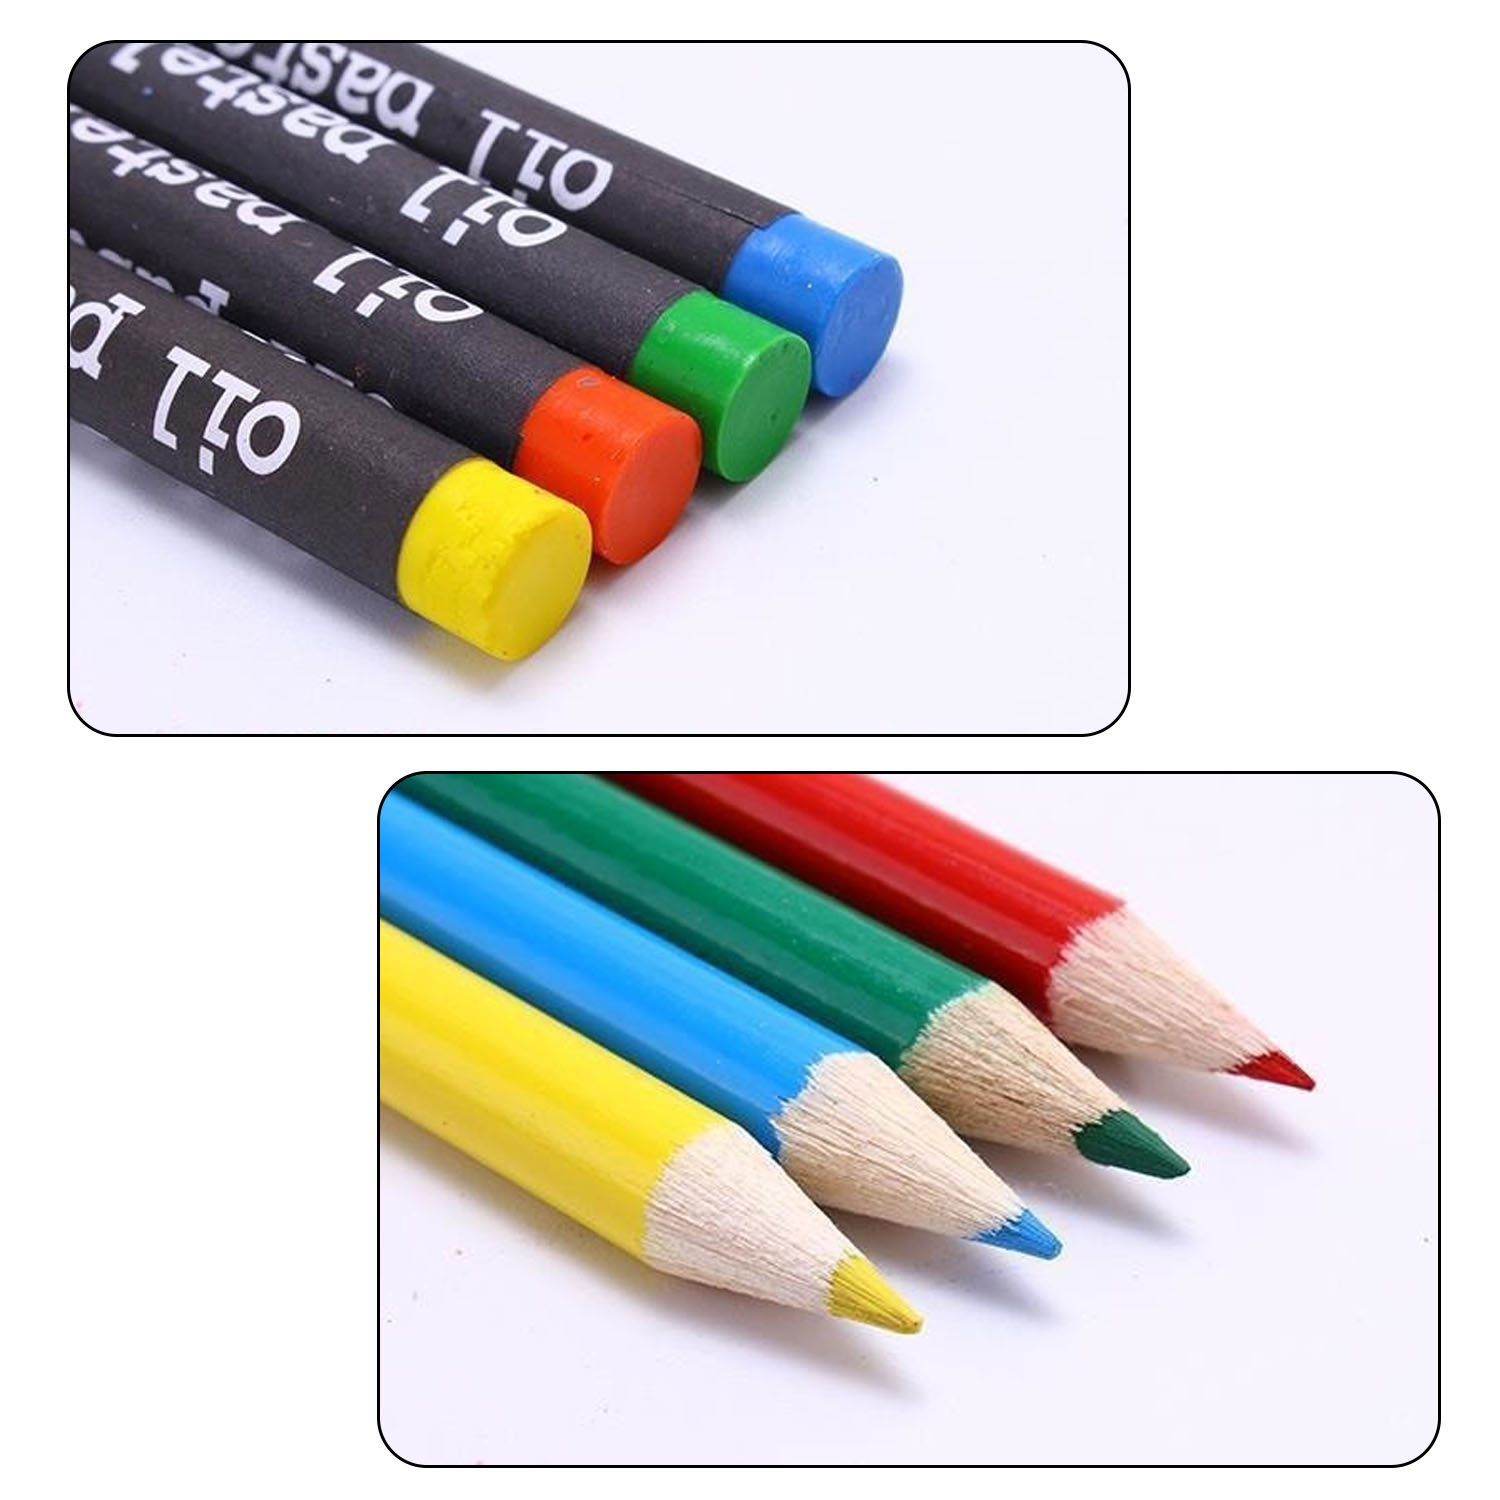 150 stk børn børn farvet blyantmaleri tuschpen farveblyant pensel tegning værktøj kunstner kit skole børnehave forsyninger